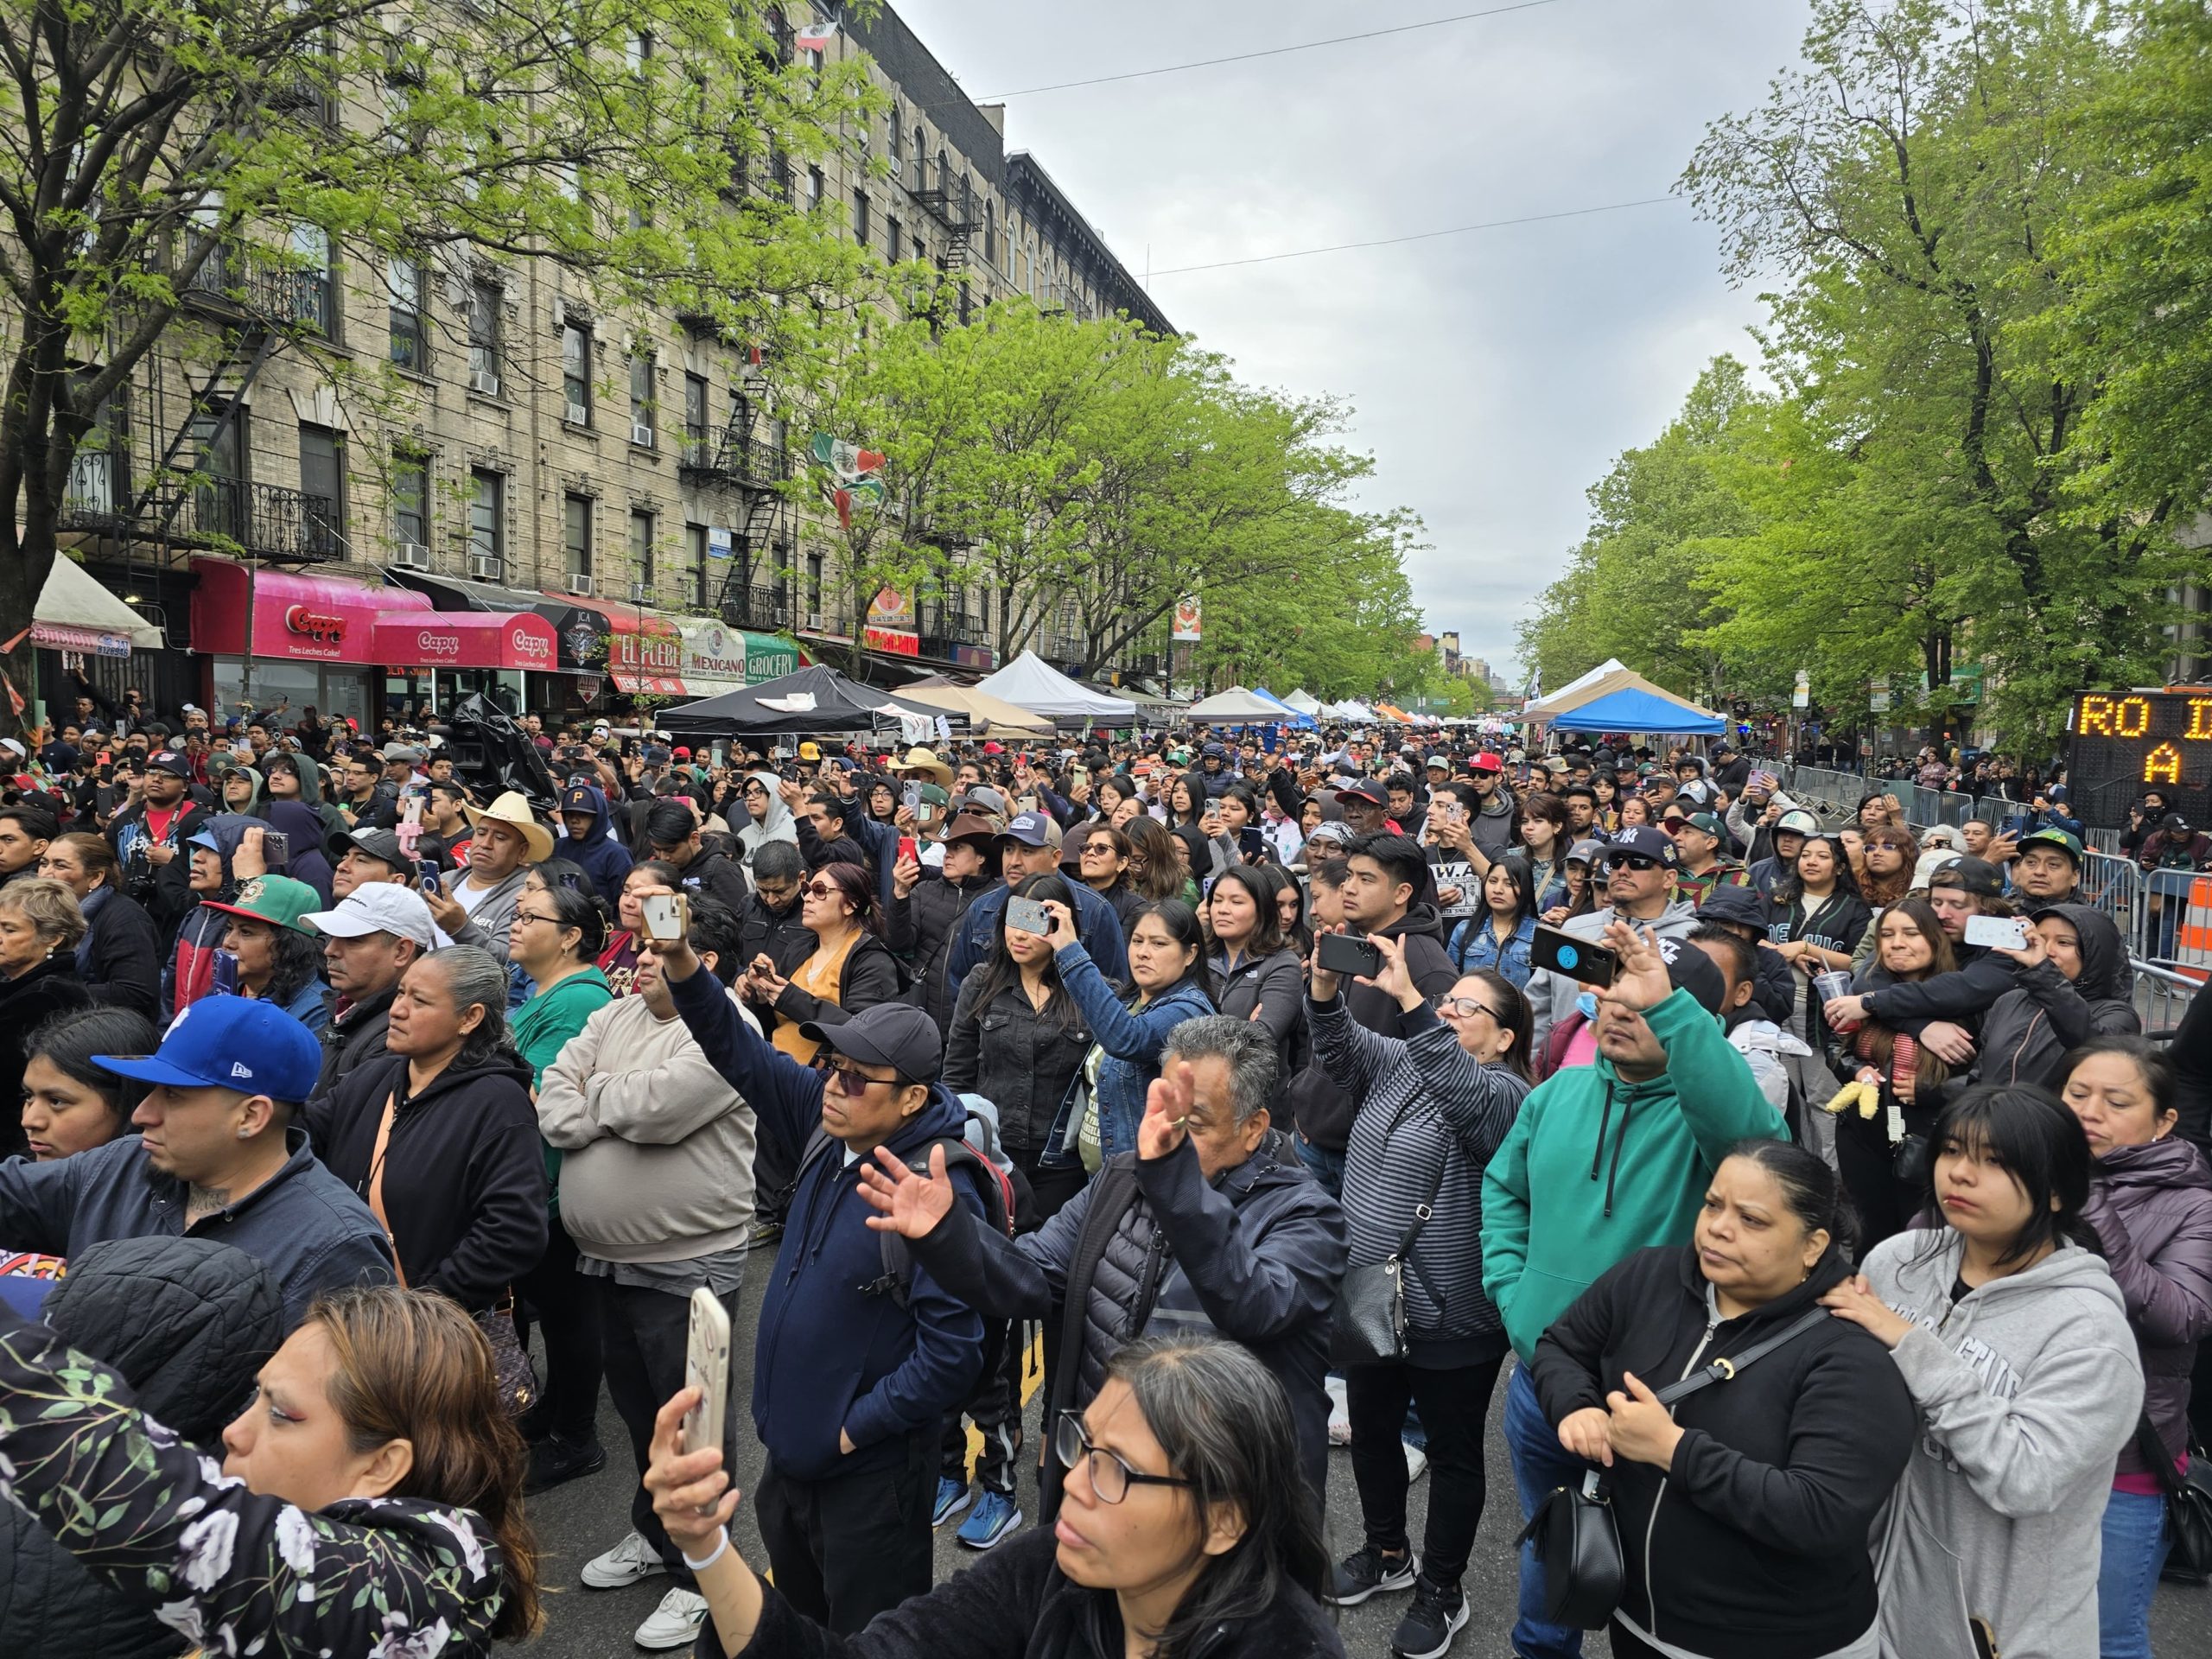 Comunidad migrante de Puebla en Nueva York expresa su apoyo a Armenta, en el marco del 5 de Mayo